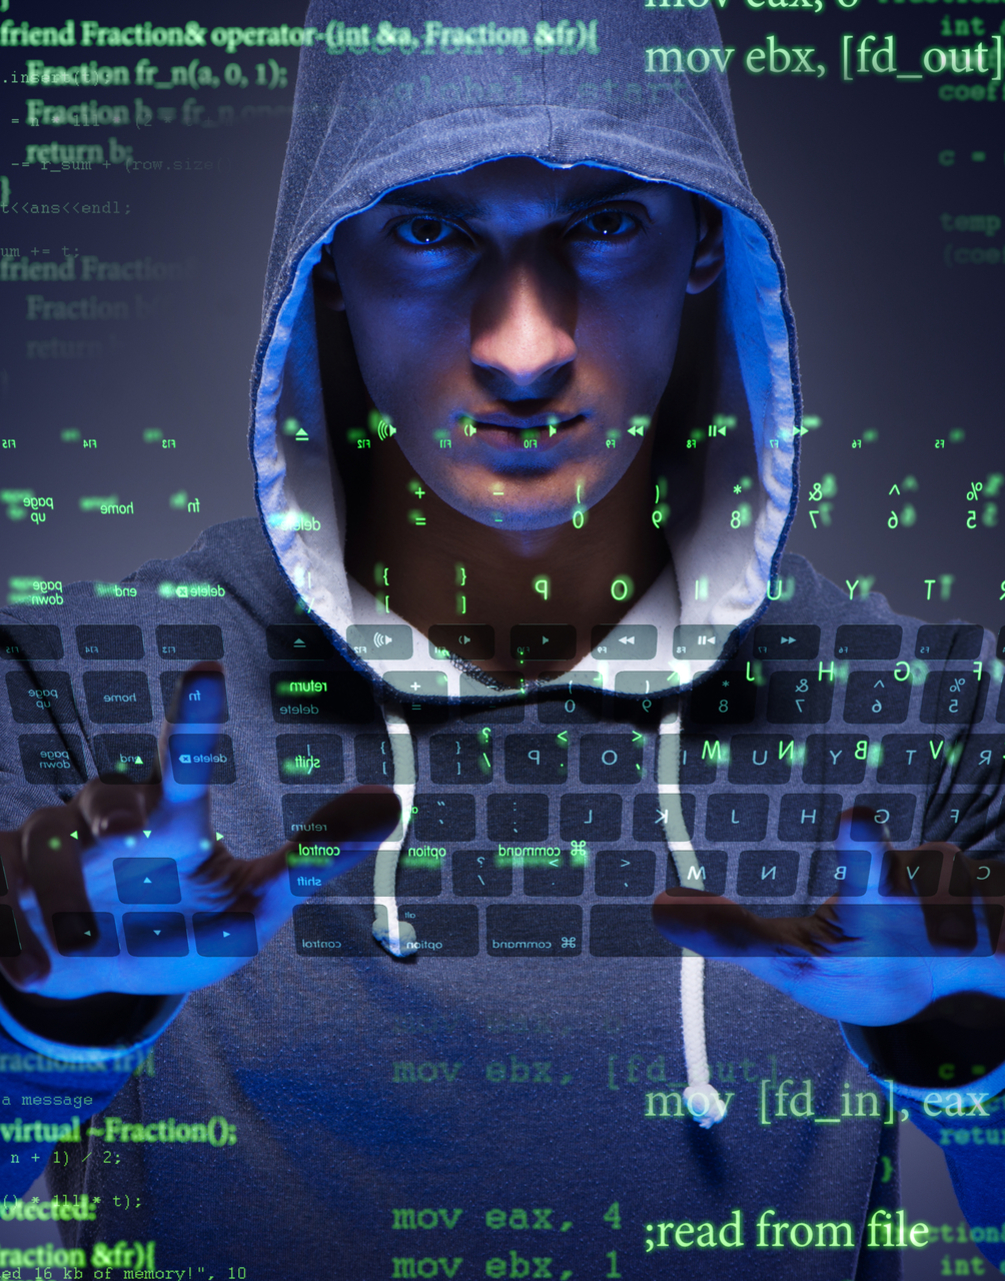 Hacker releasing ransomware